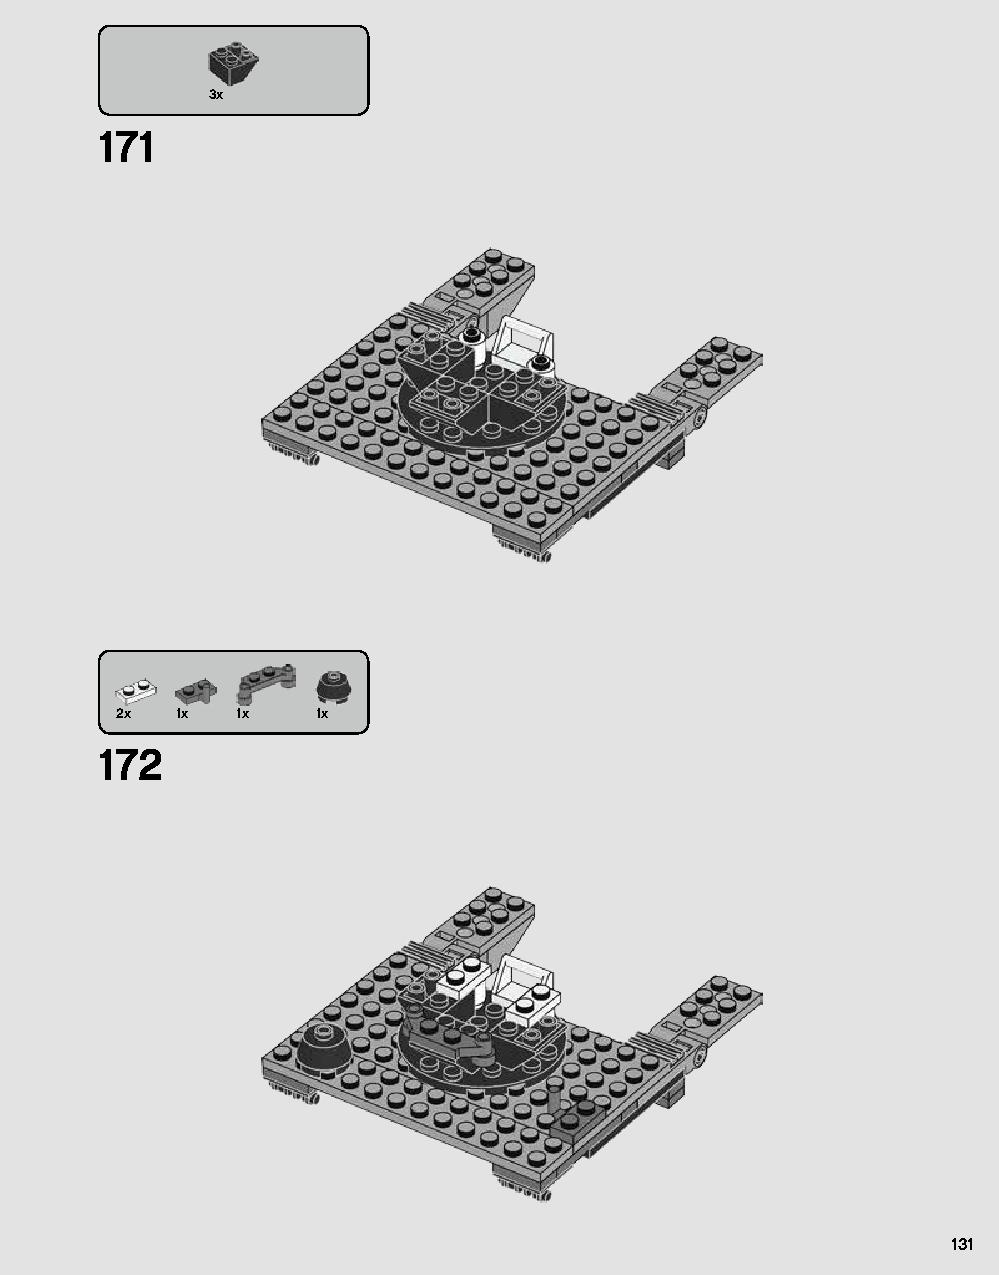 ダース・ベイダーの城 75251 レゴの商品情報 レゴの説明書・組立方法 131 page